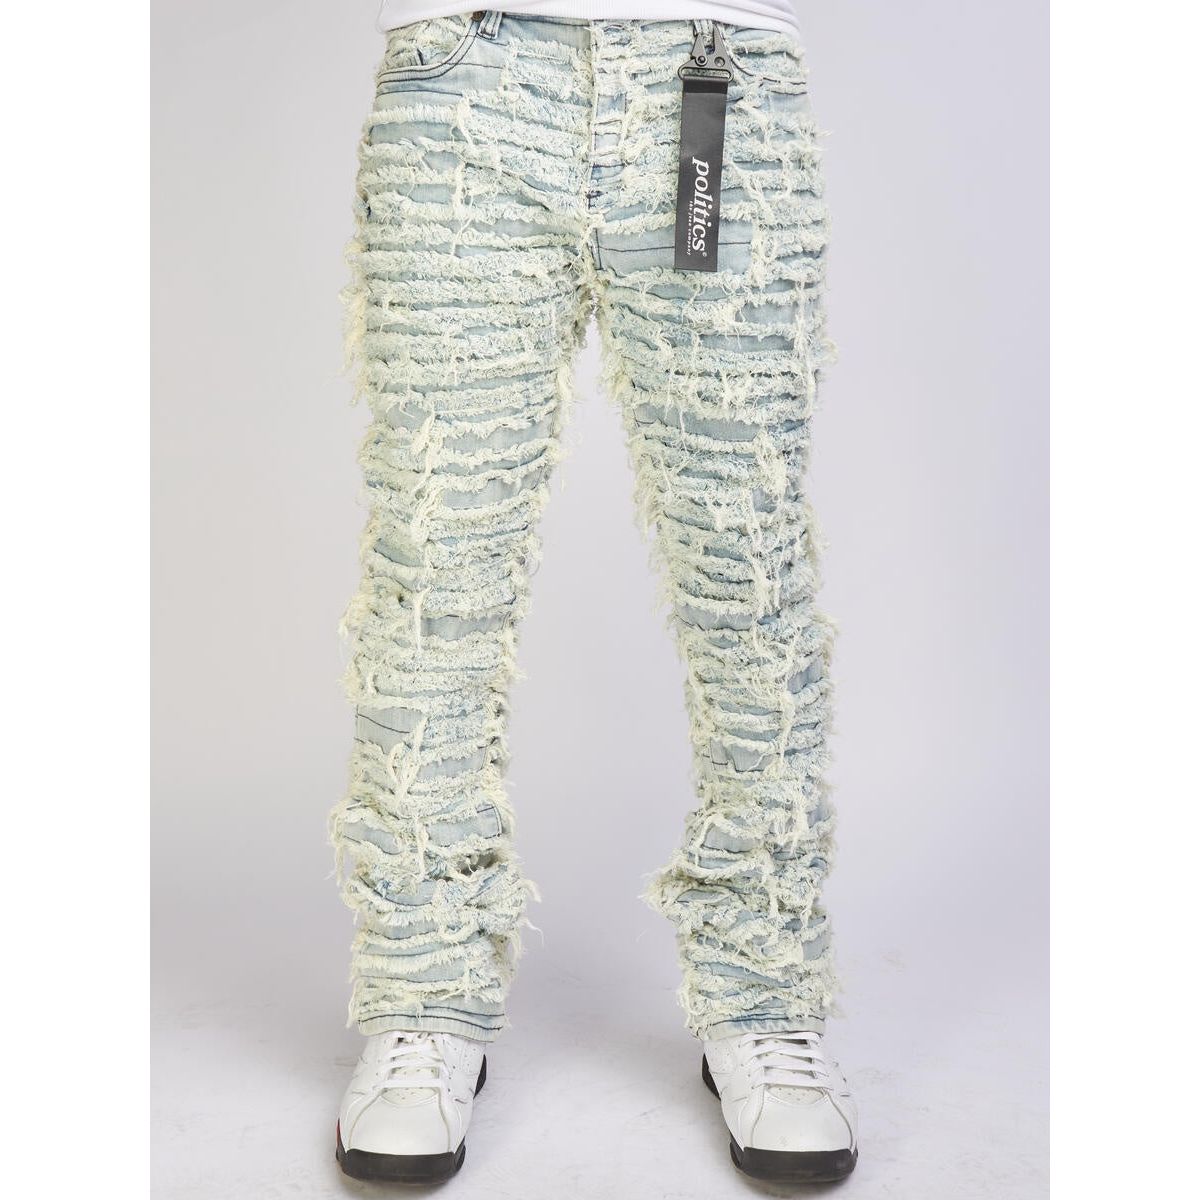 Politics Jeans Lightest Blue Thrashed Distressed Stacked Flare (Debris511)